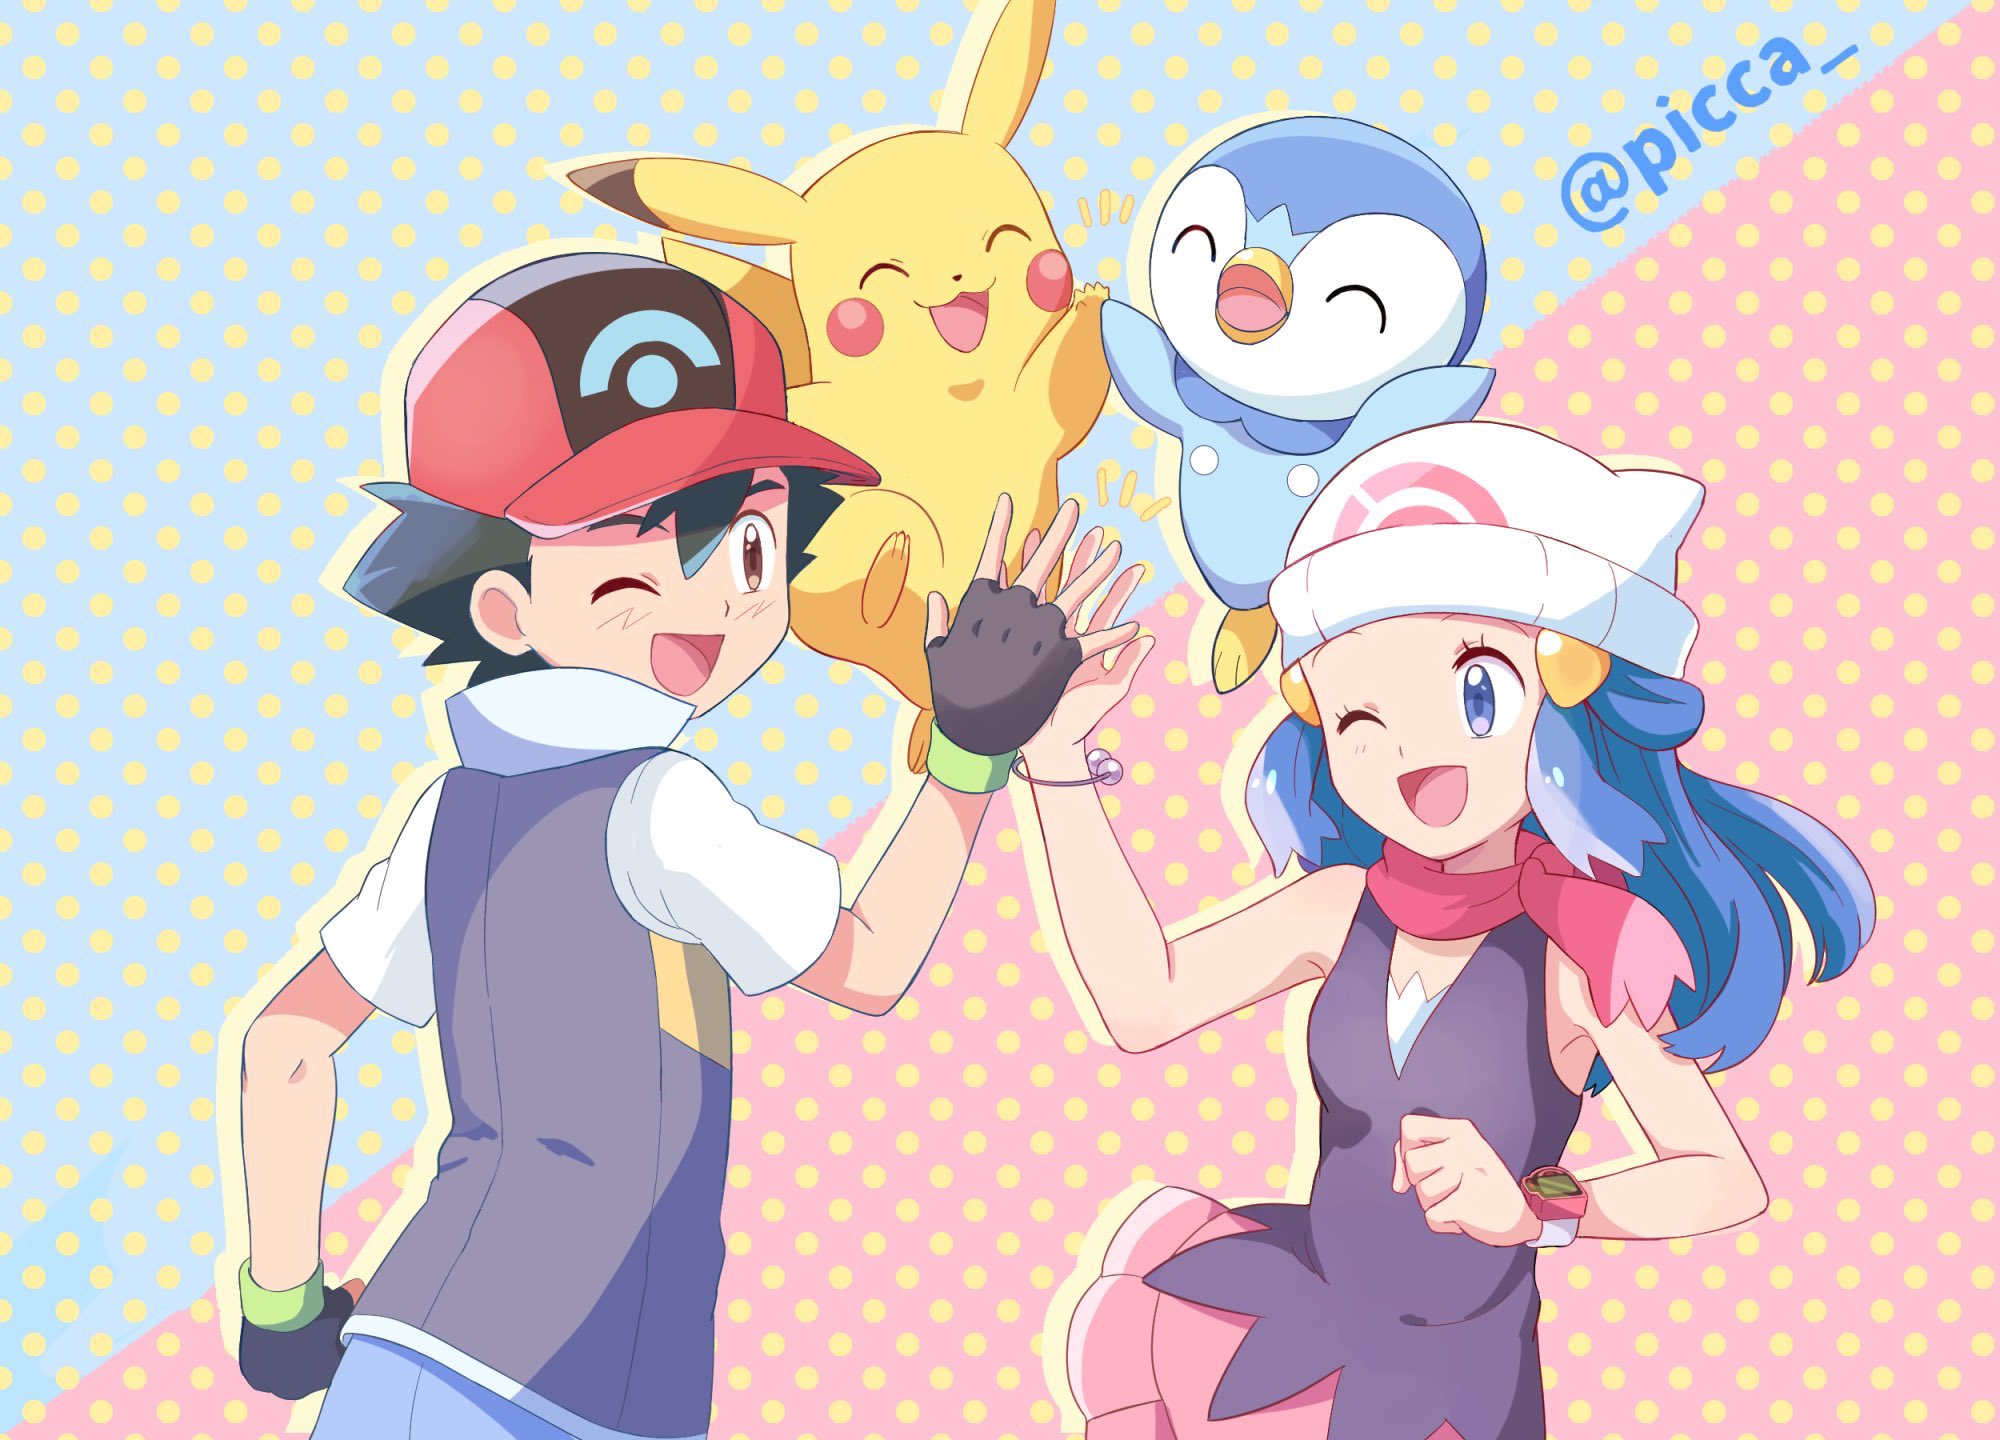 ♡Dawn wallpaper♡  Cute pokemon wallpaper, Pokemon, Pokemon ash